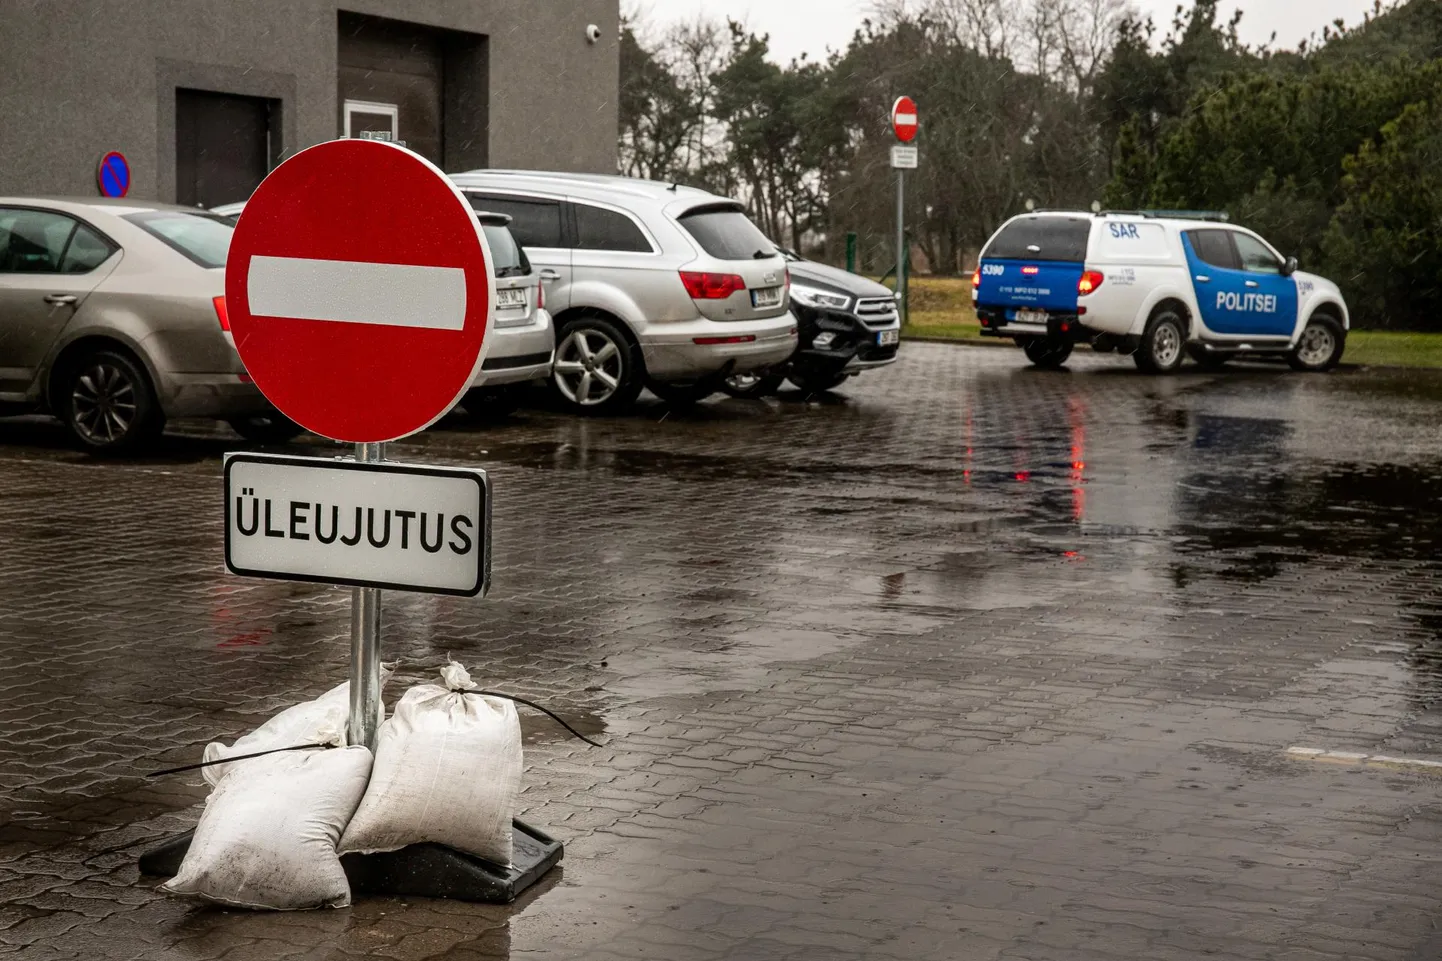 Pärnus paigaldati üleujutusohu tõttu mitmele poole rannaäärsetele tänavatele sissesõidukeelu märgid.